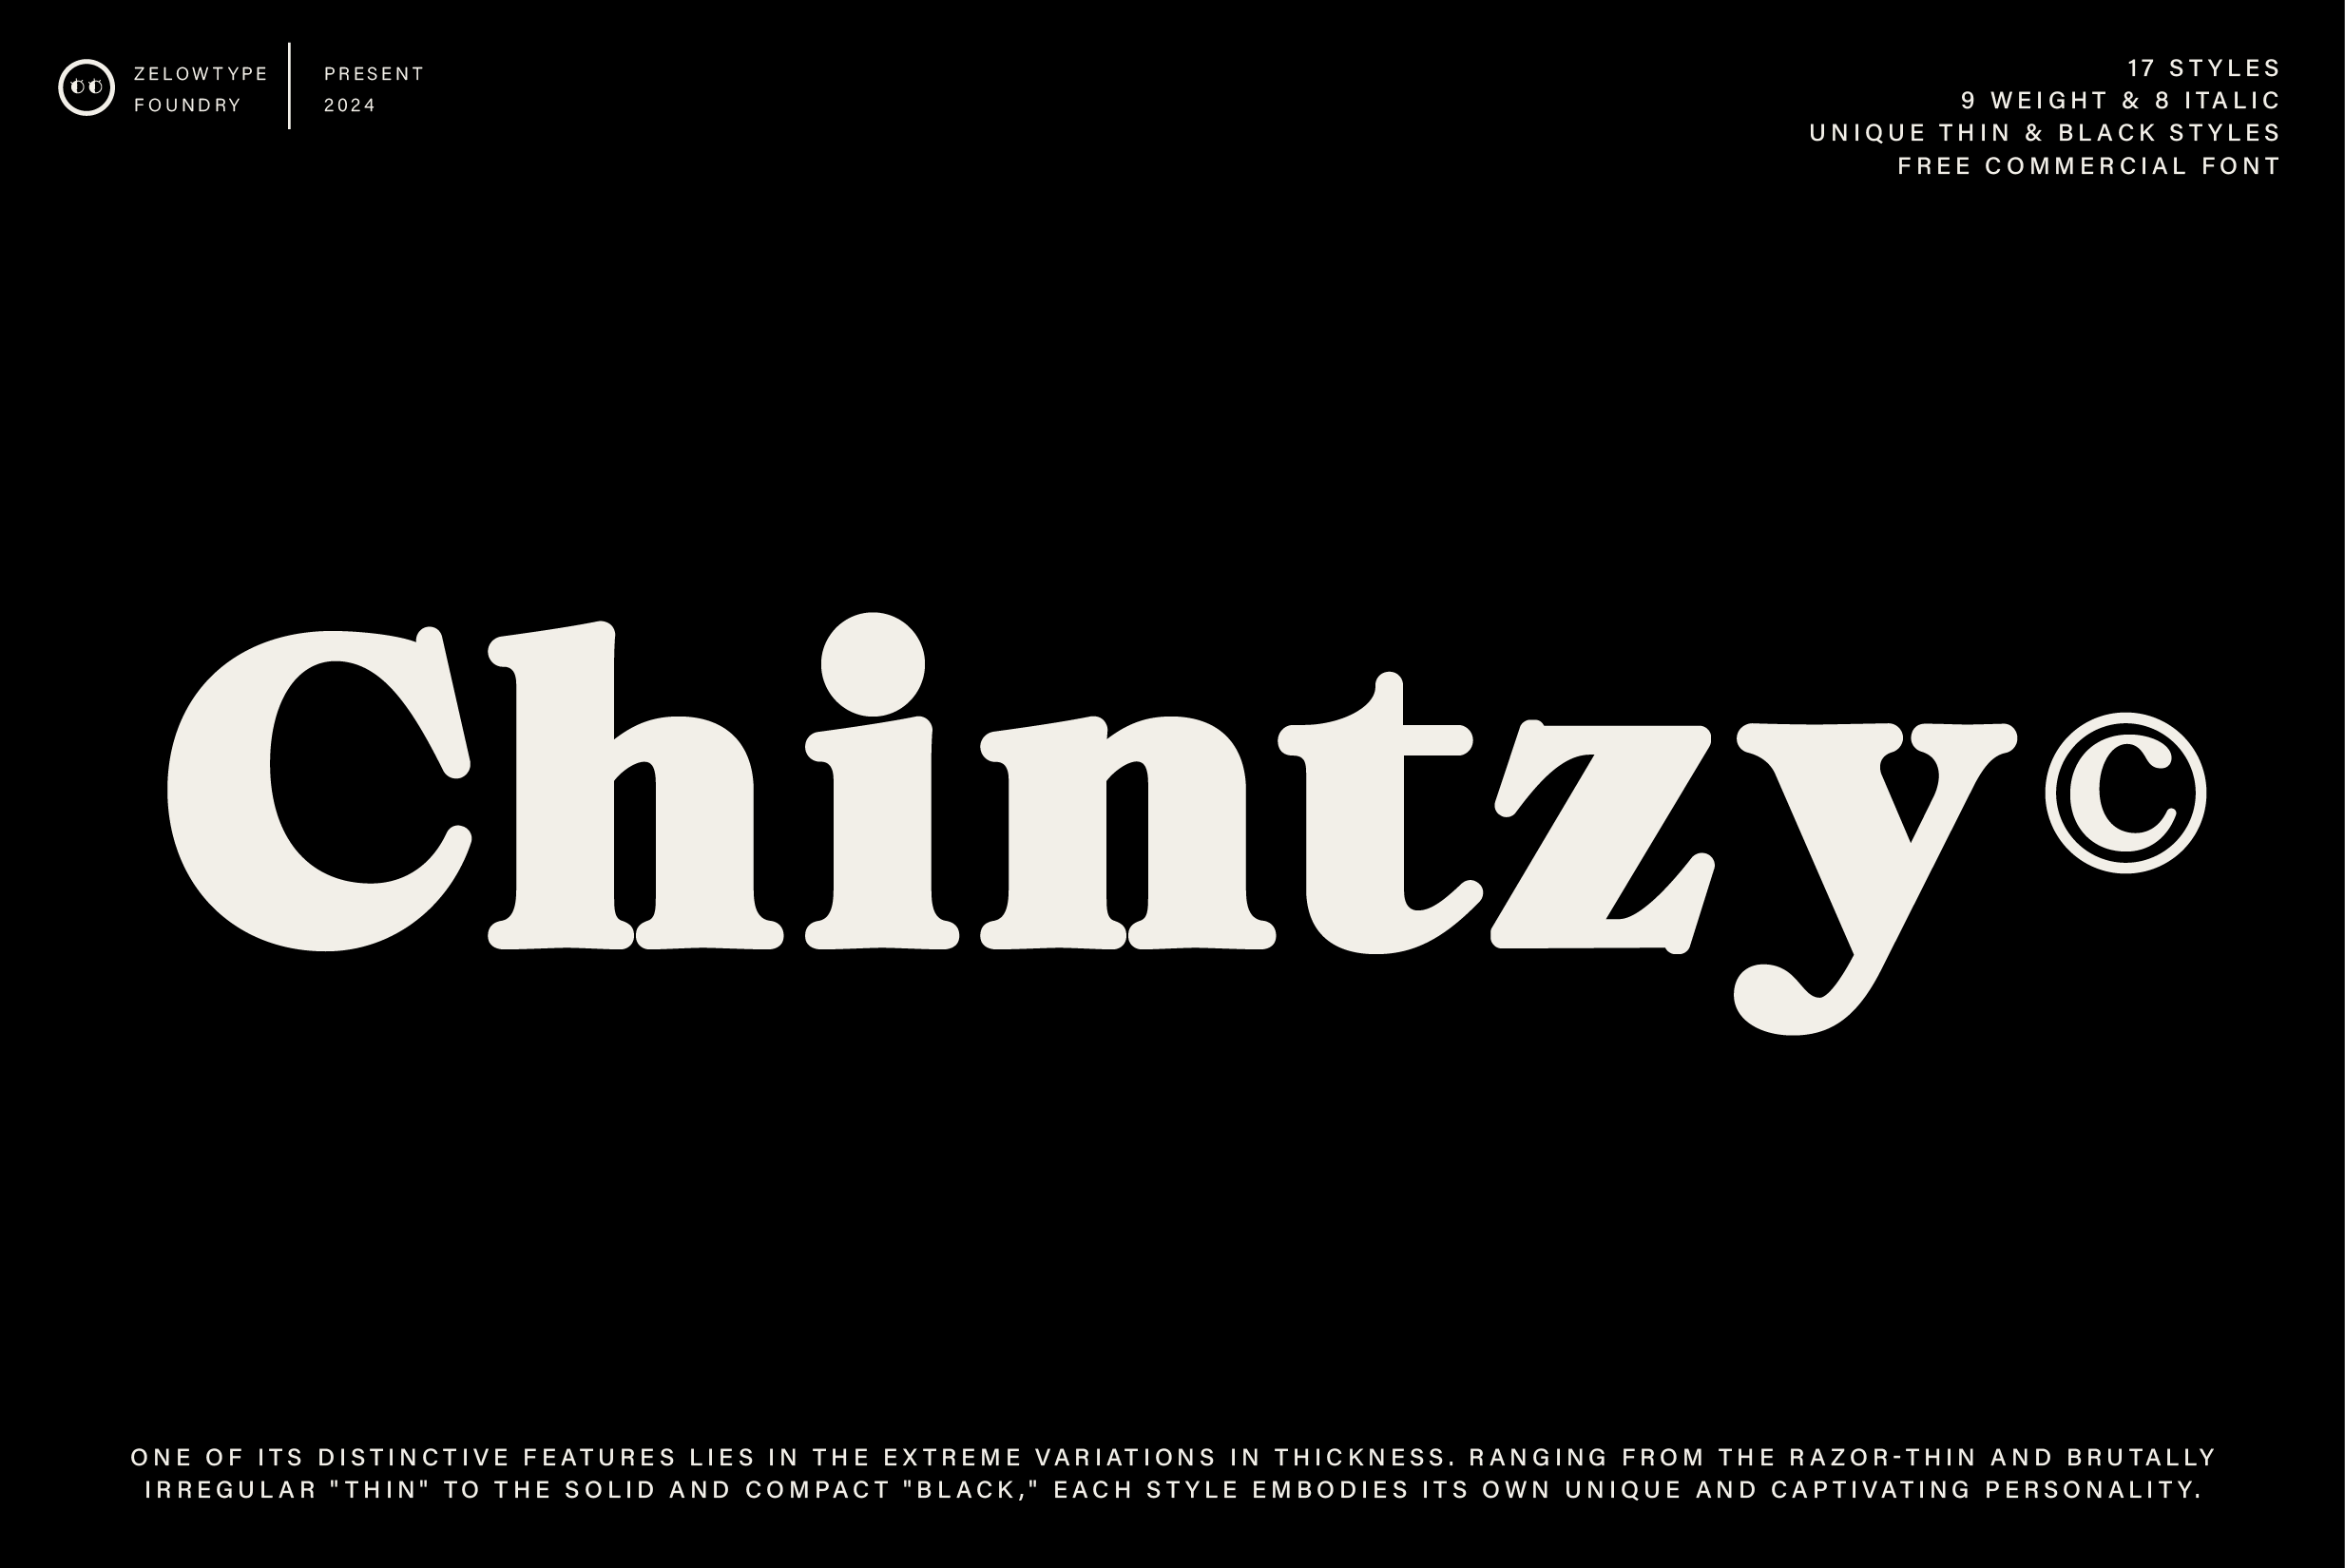 ZT Chintzy